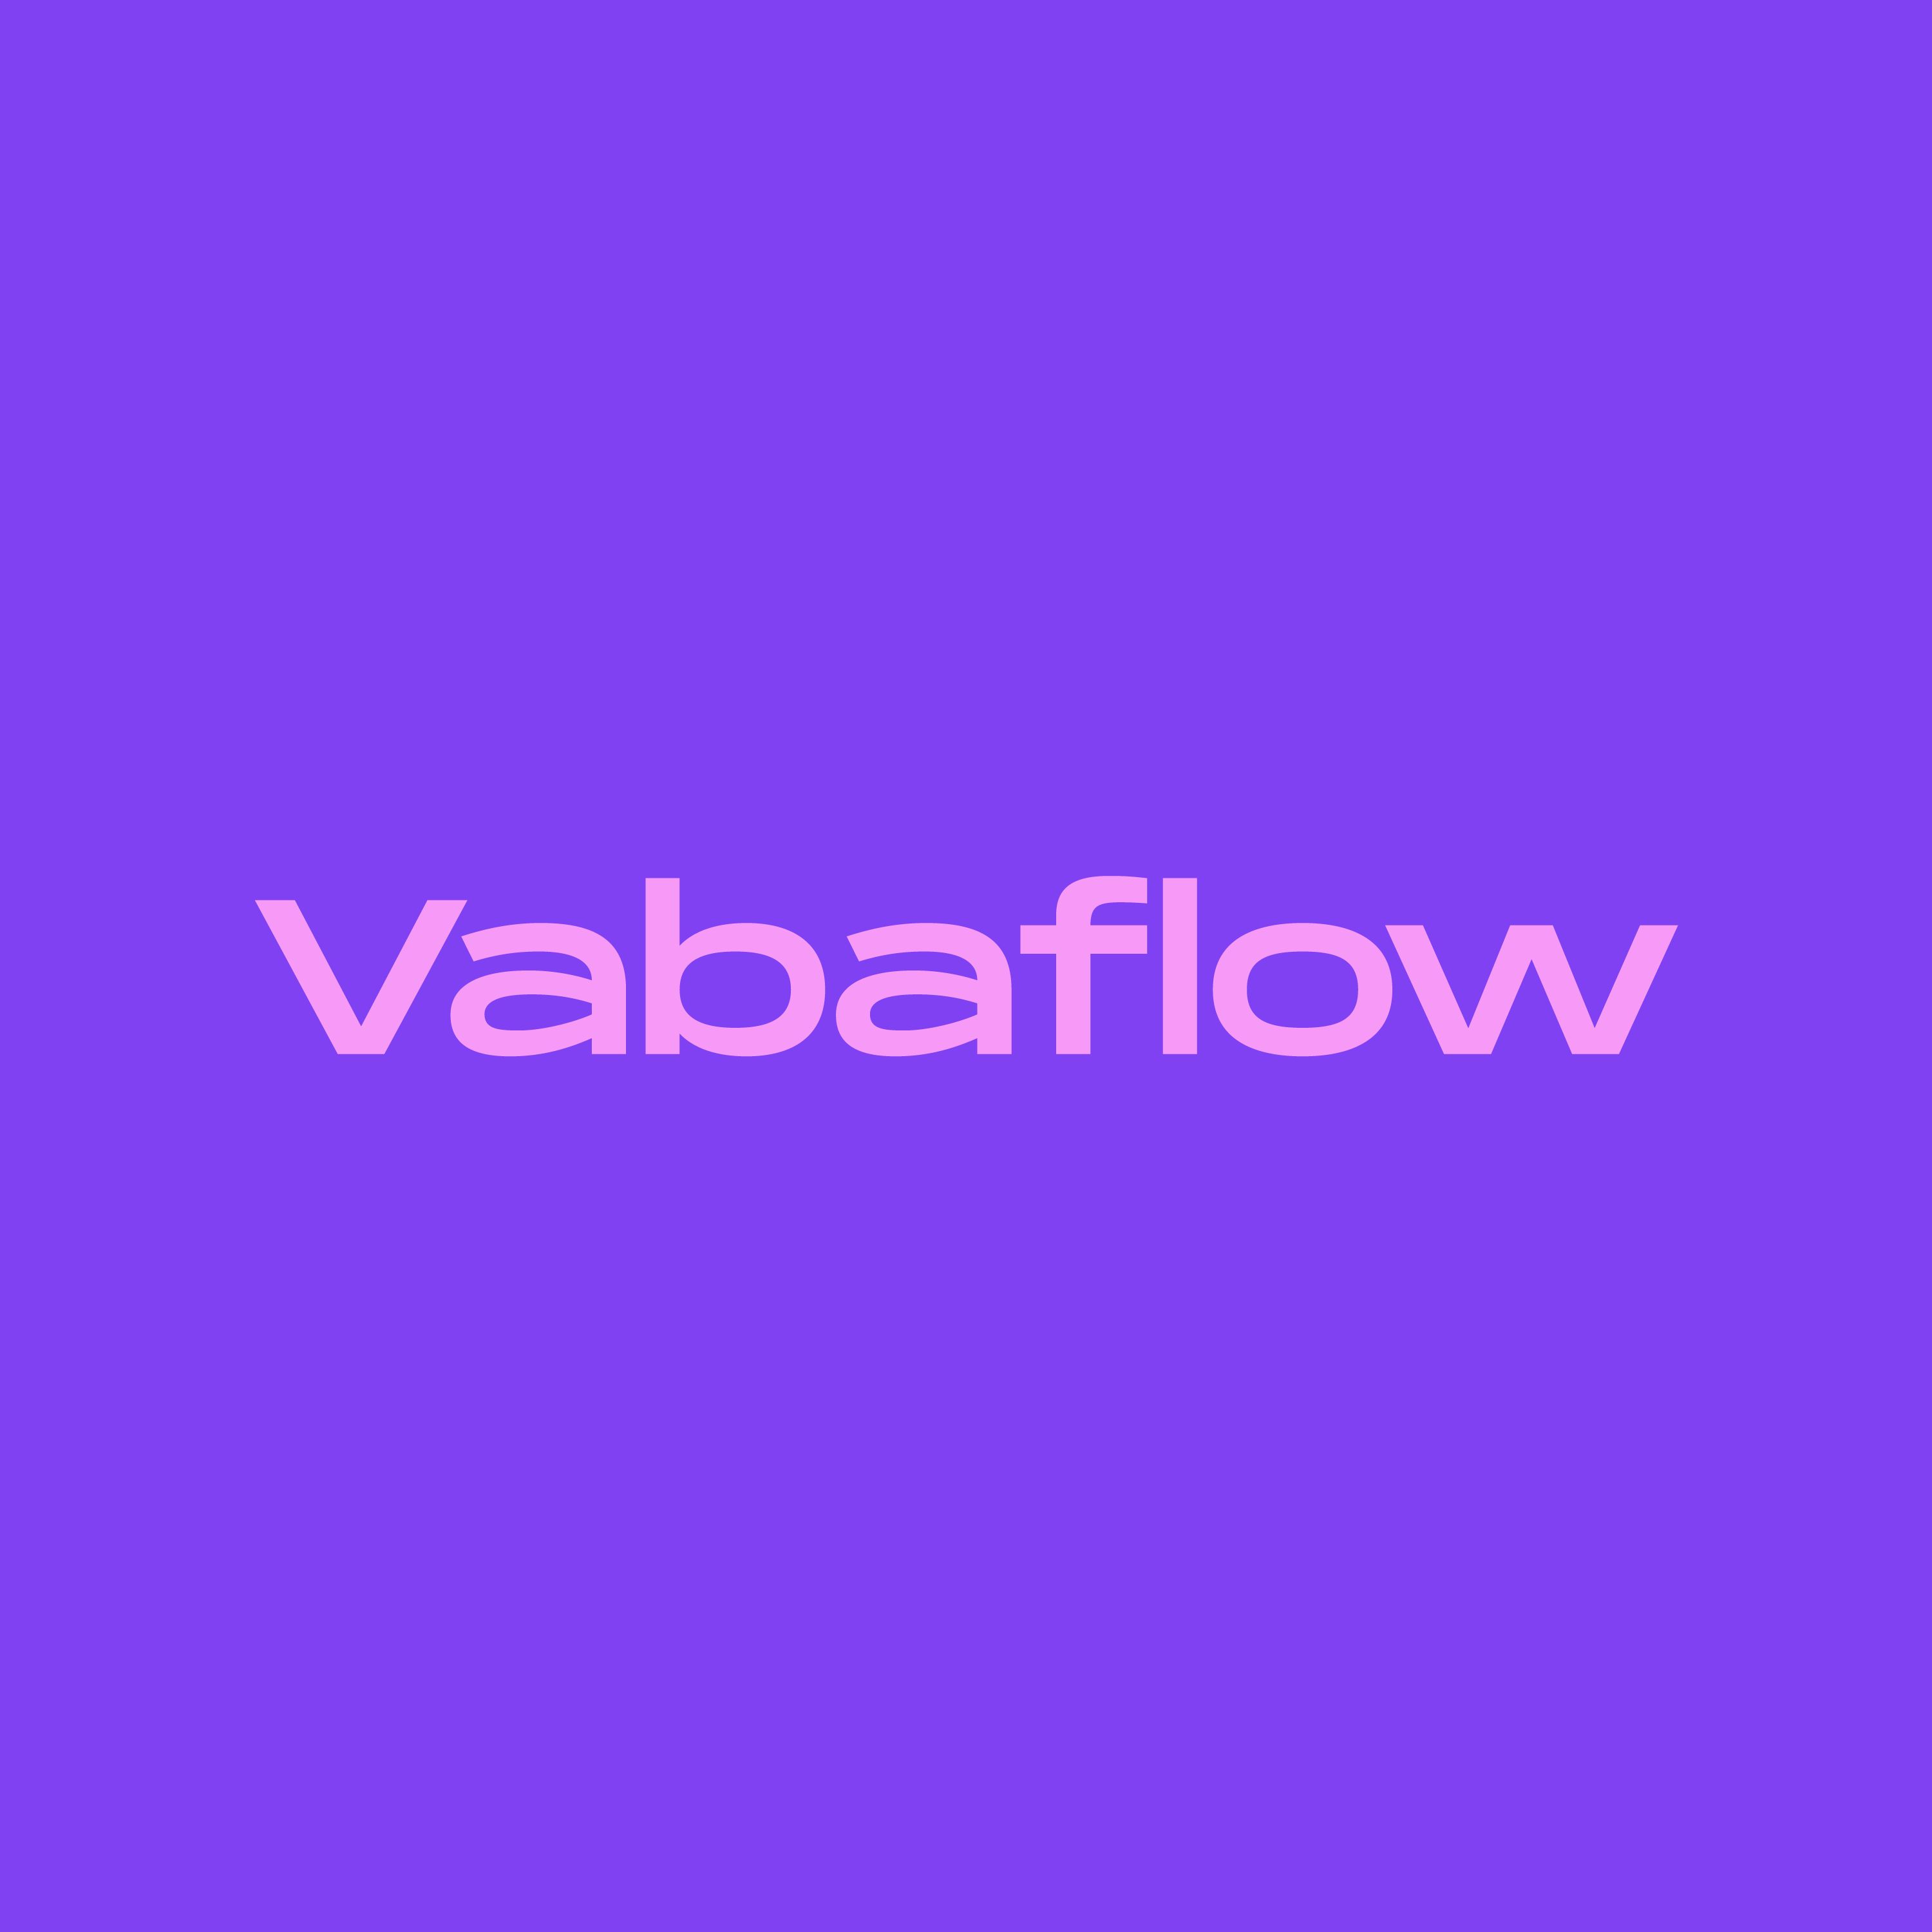 Vabaflow